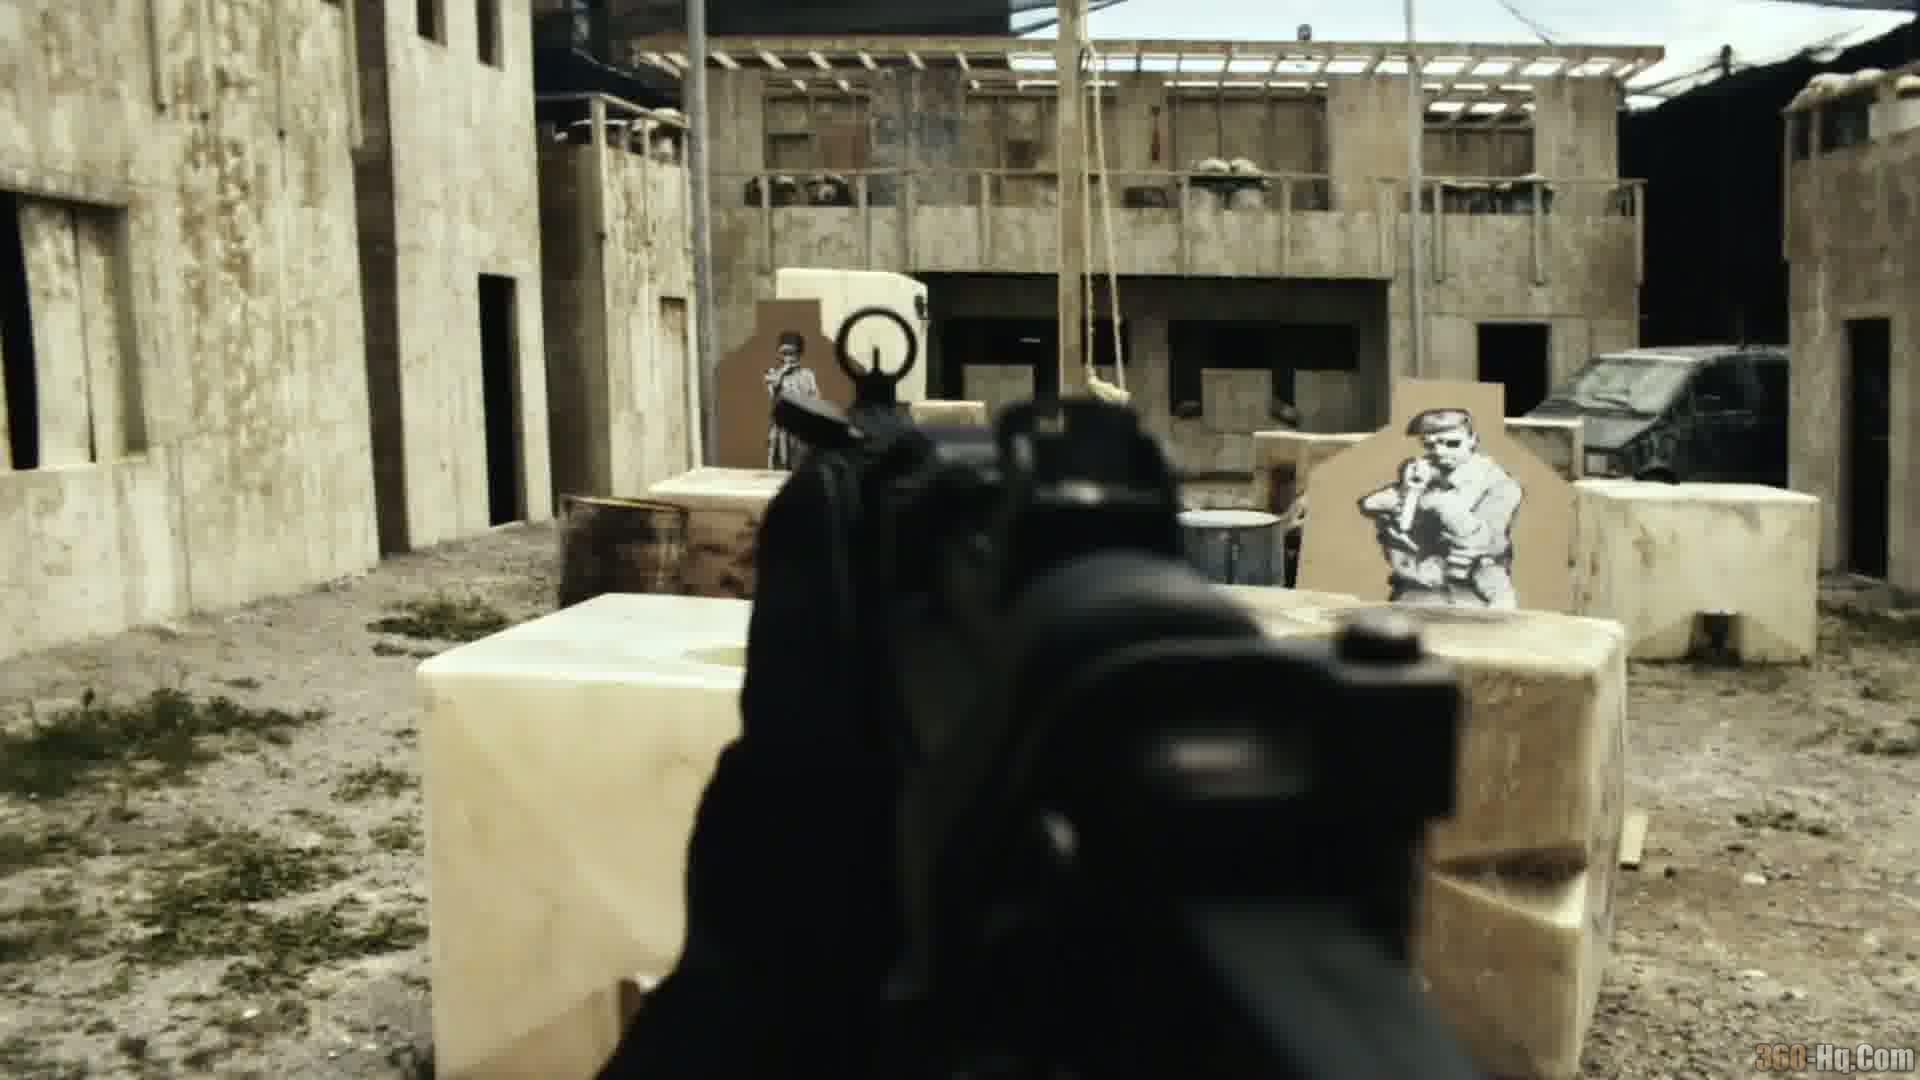 Call of Duty: Modern Warfare 3 Screenshot 16003